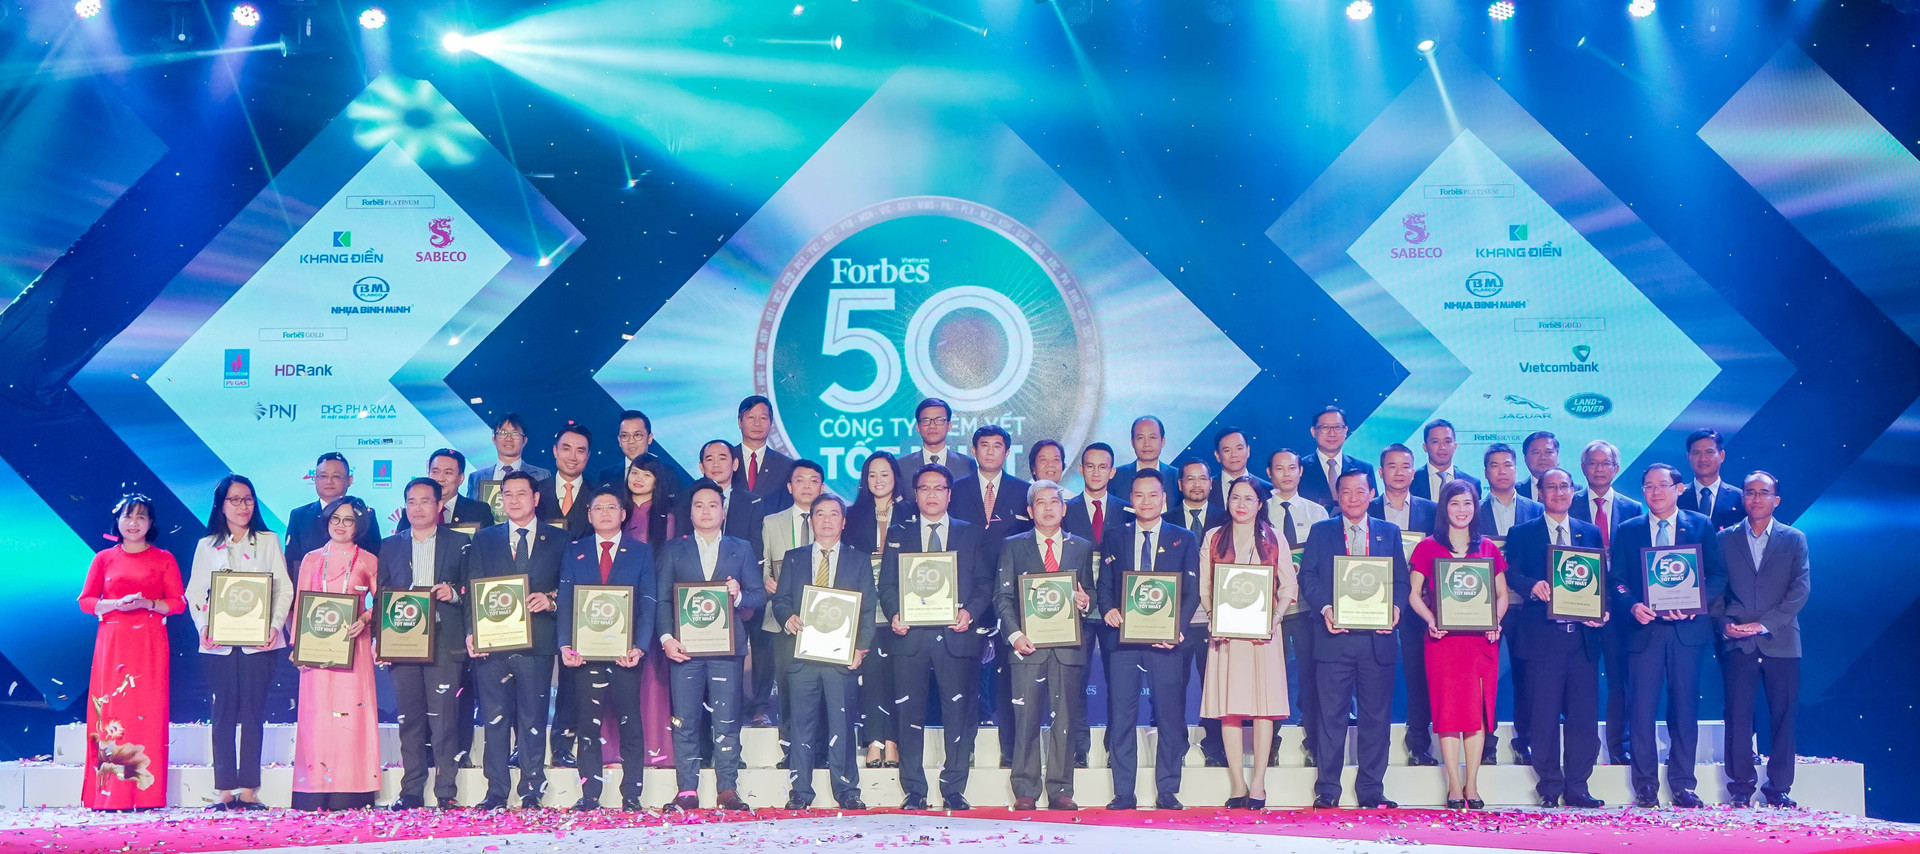 Đại diện các doanh nghiệp được vinh danh trong Top 50 công ty niêm yết tốt nhất Việt Nam năm 2020.